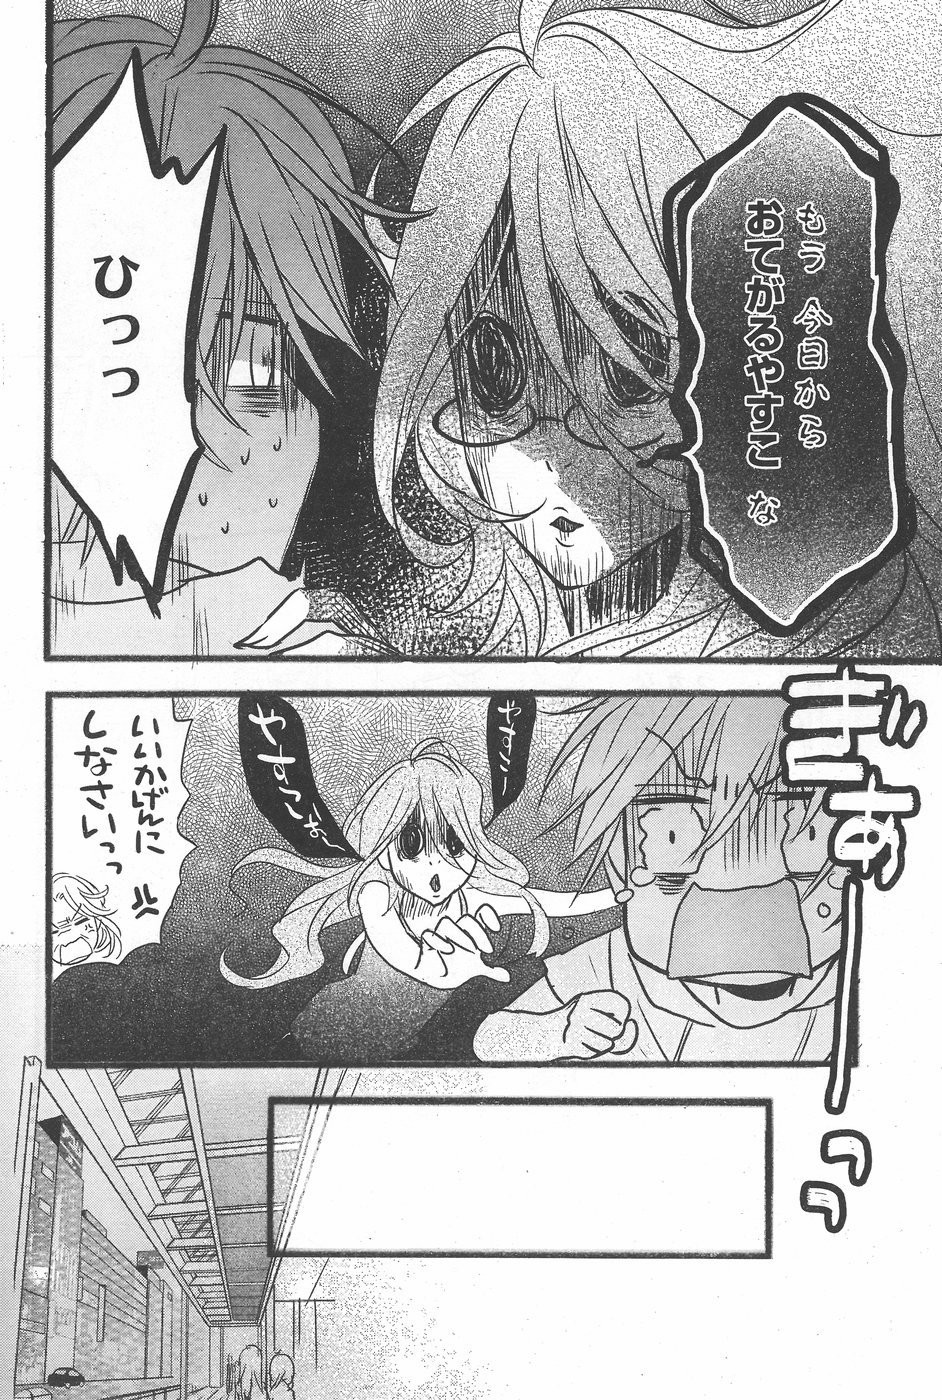 Bokura wa Minna Kawaisou - Chapter 71 - Page 6